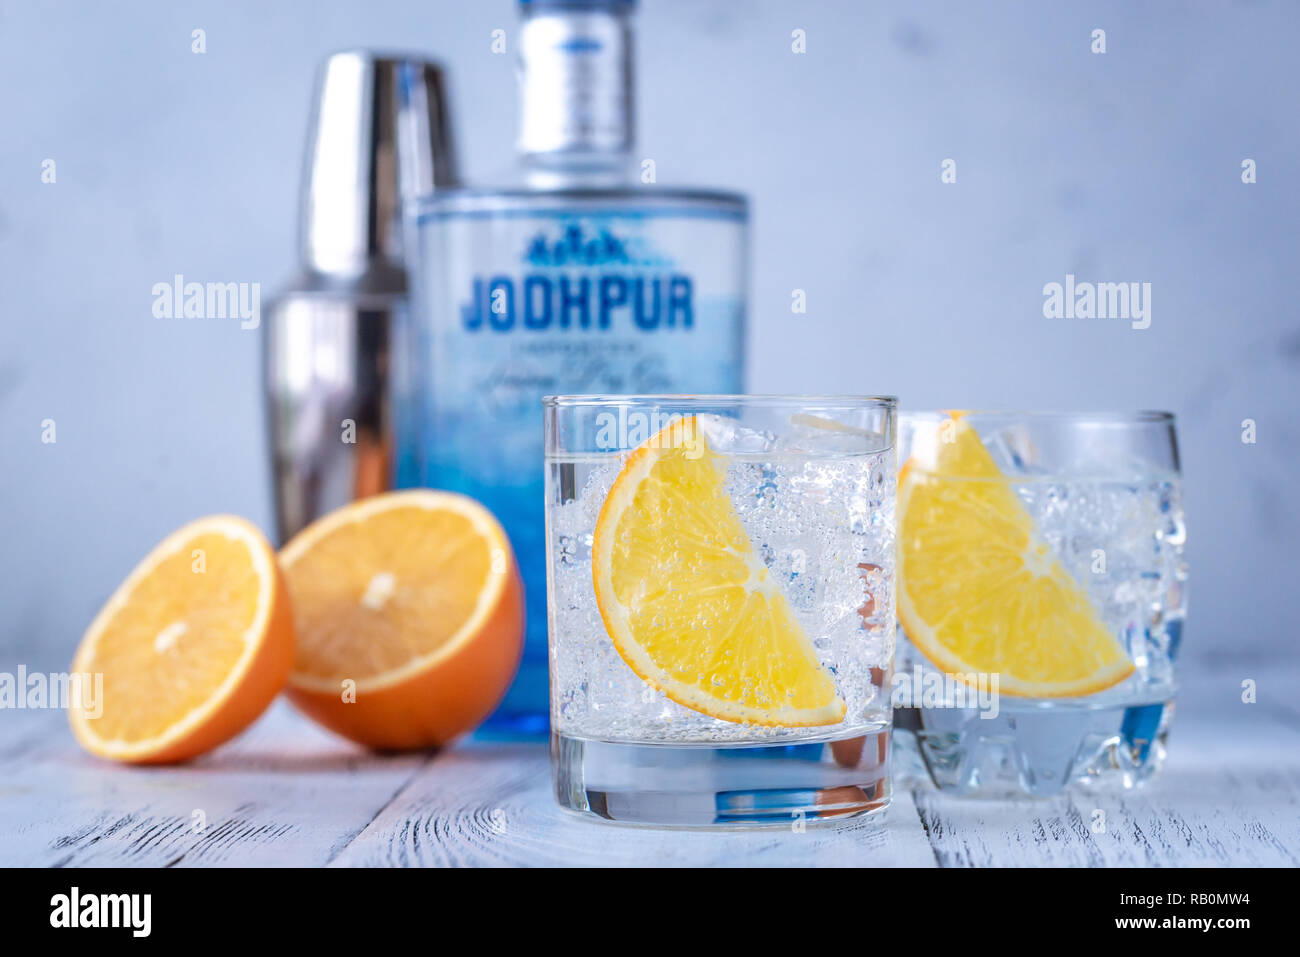 Kharkov, Ukraine - Januar 4, 2019: Gläser Gin und Tonic Cocktail mit Flasche Jodhpur Gin auf dem weißen Holz- Hintergrund. Stockfoto